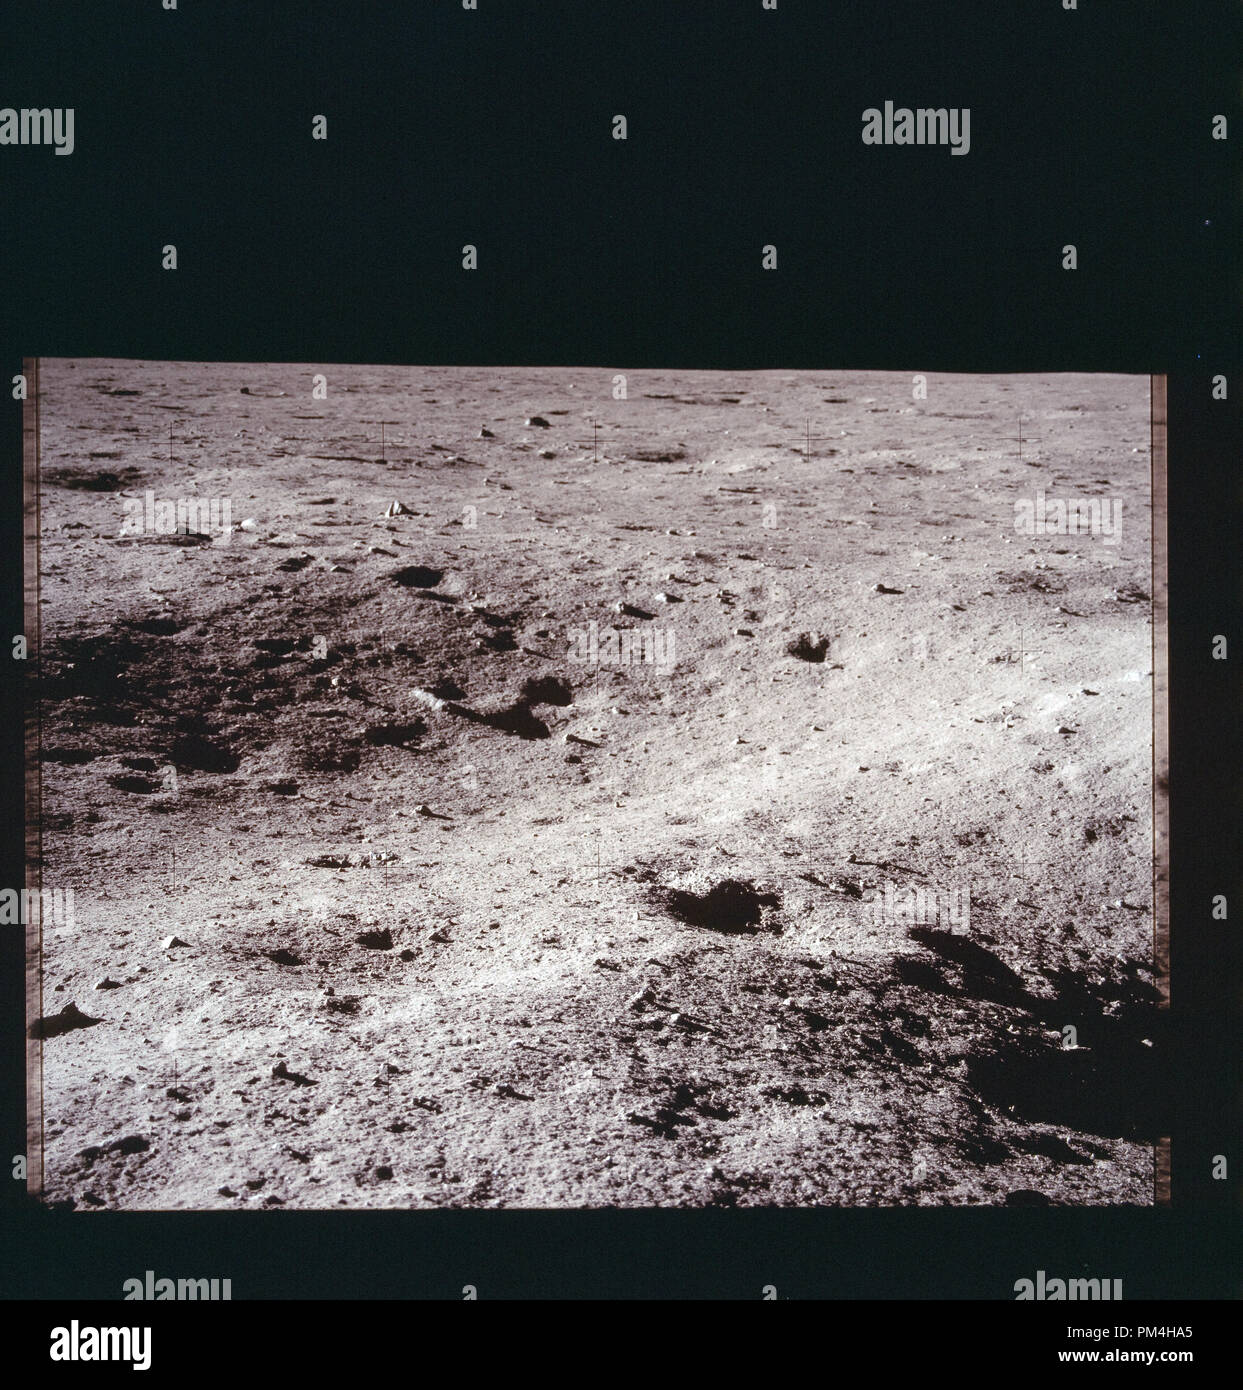 Die Oberfläche des Mondes im Juli 20, 1969 die Geschichte der Reise auf den Mond und die anschließende Mondlandung. Datei Referenz Nr. 1003 267 THA Stockfoto